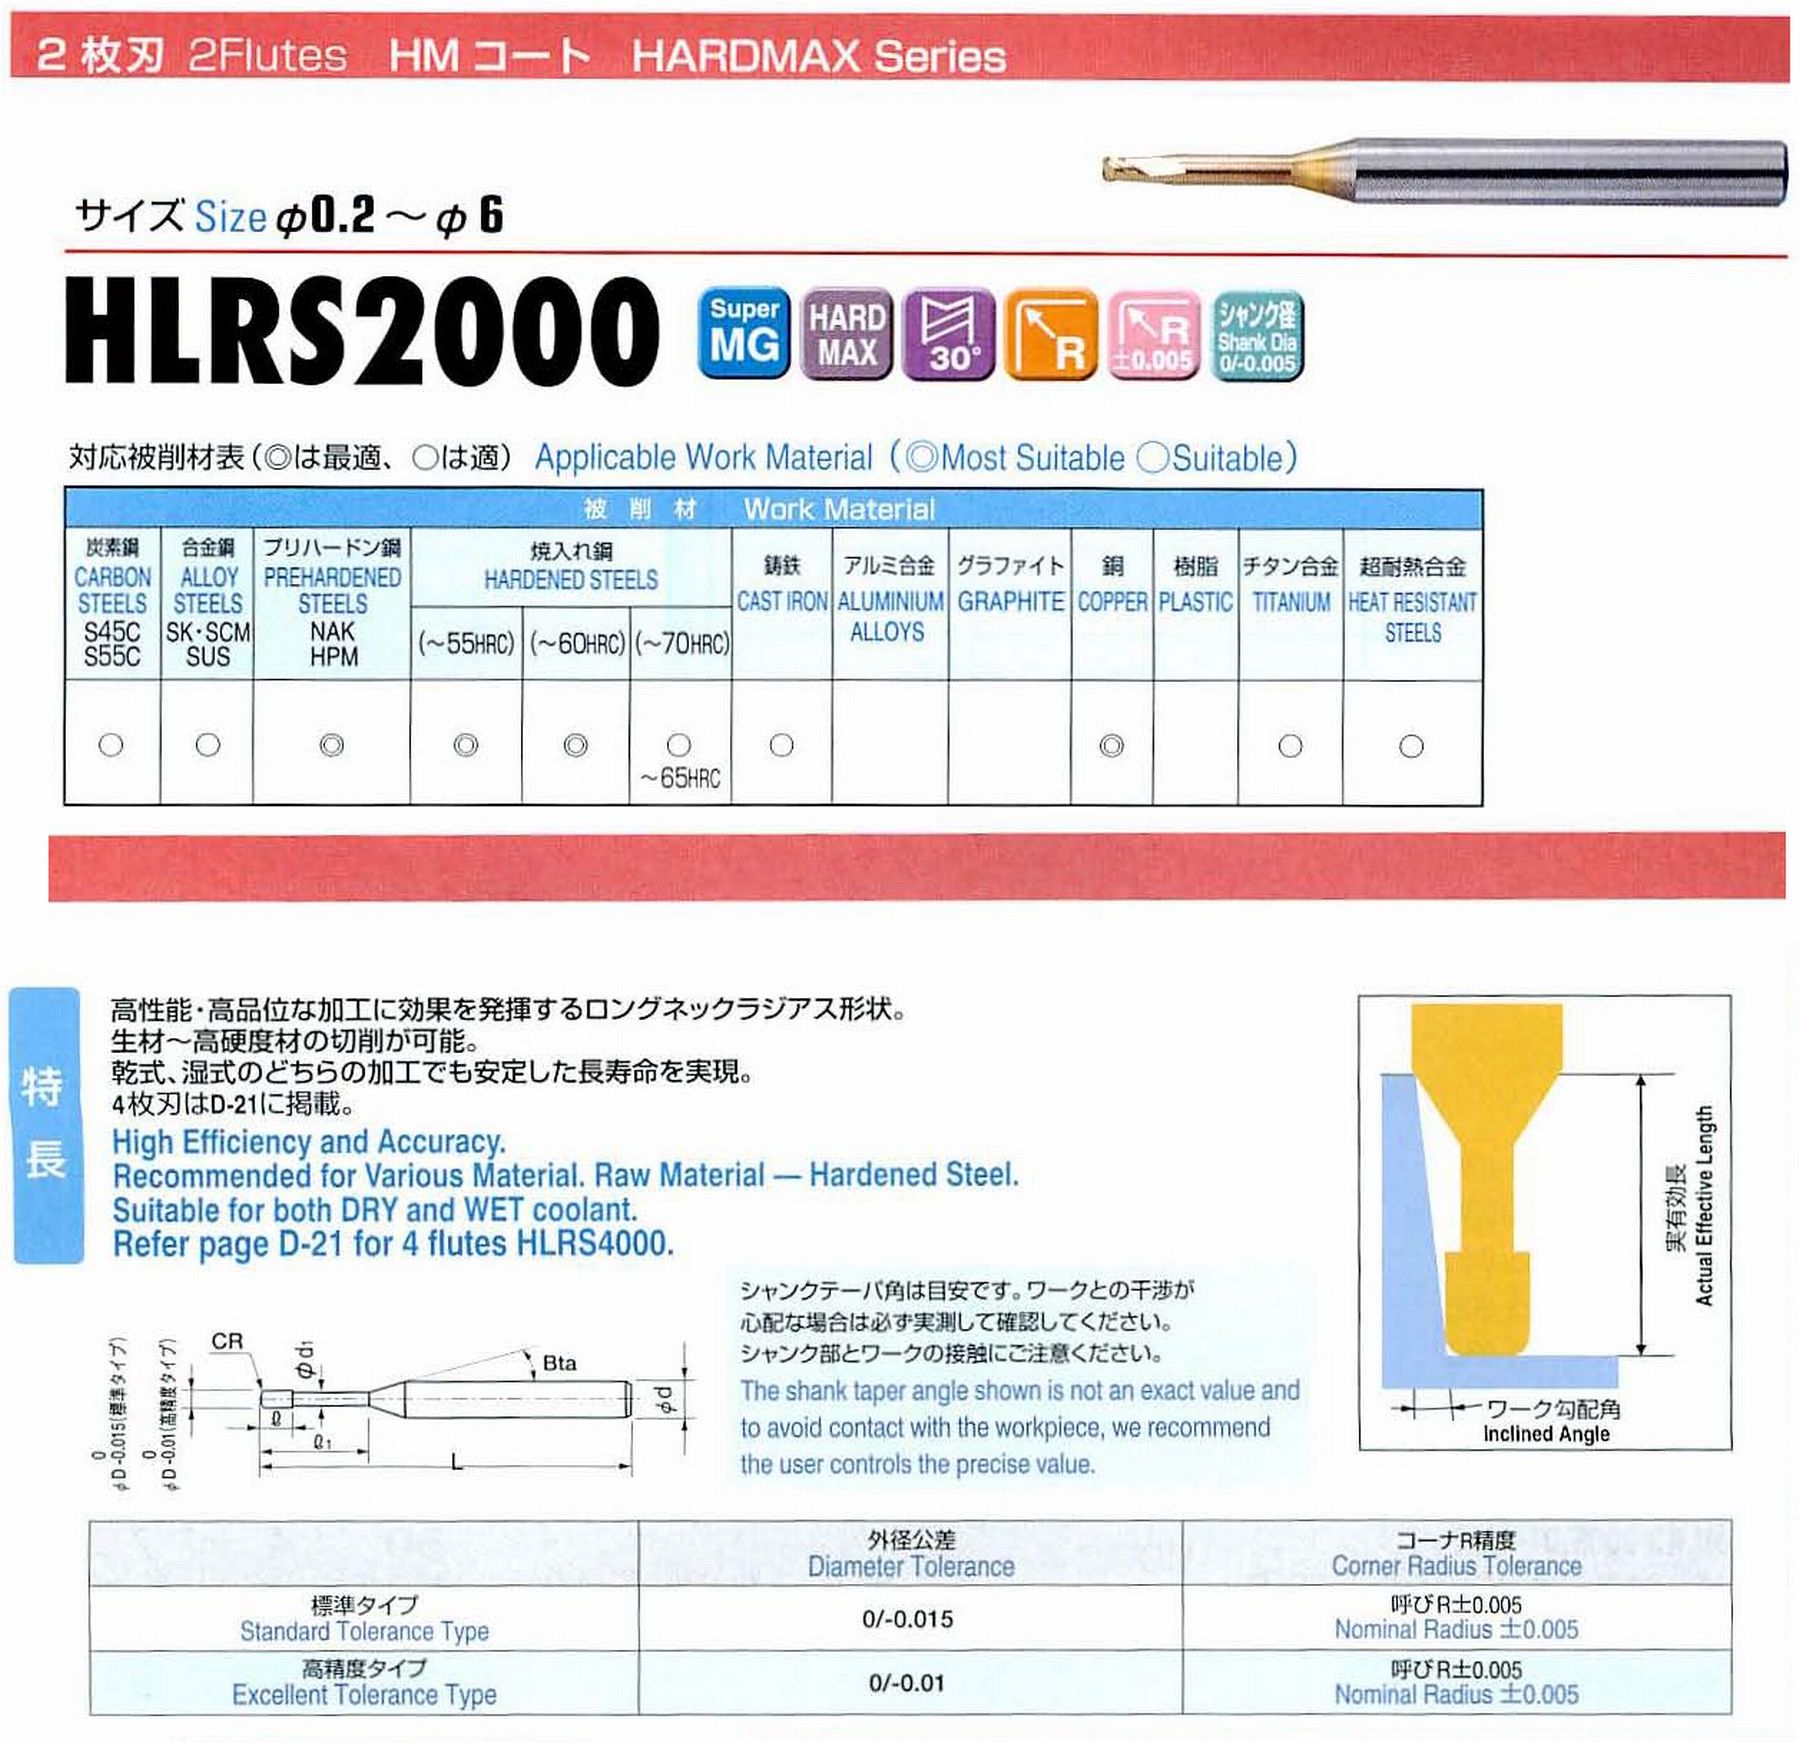 ユニオンツール 2枚刃 HLRS2004-005-015E 外径0.4 コーナ半径R0.05 有効長1.5 刃長0.4 首径0.38 シャンクテーパ角16° 全長50 シャンク径4